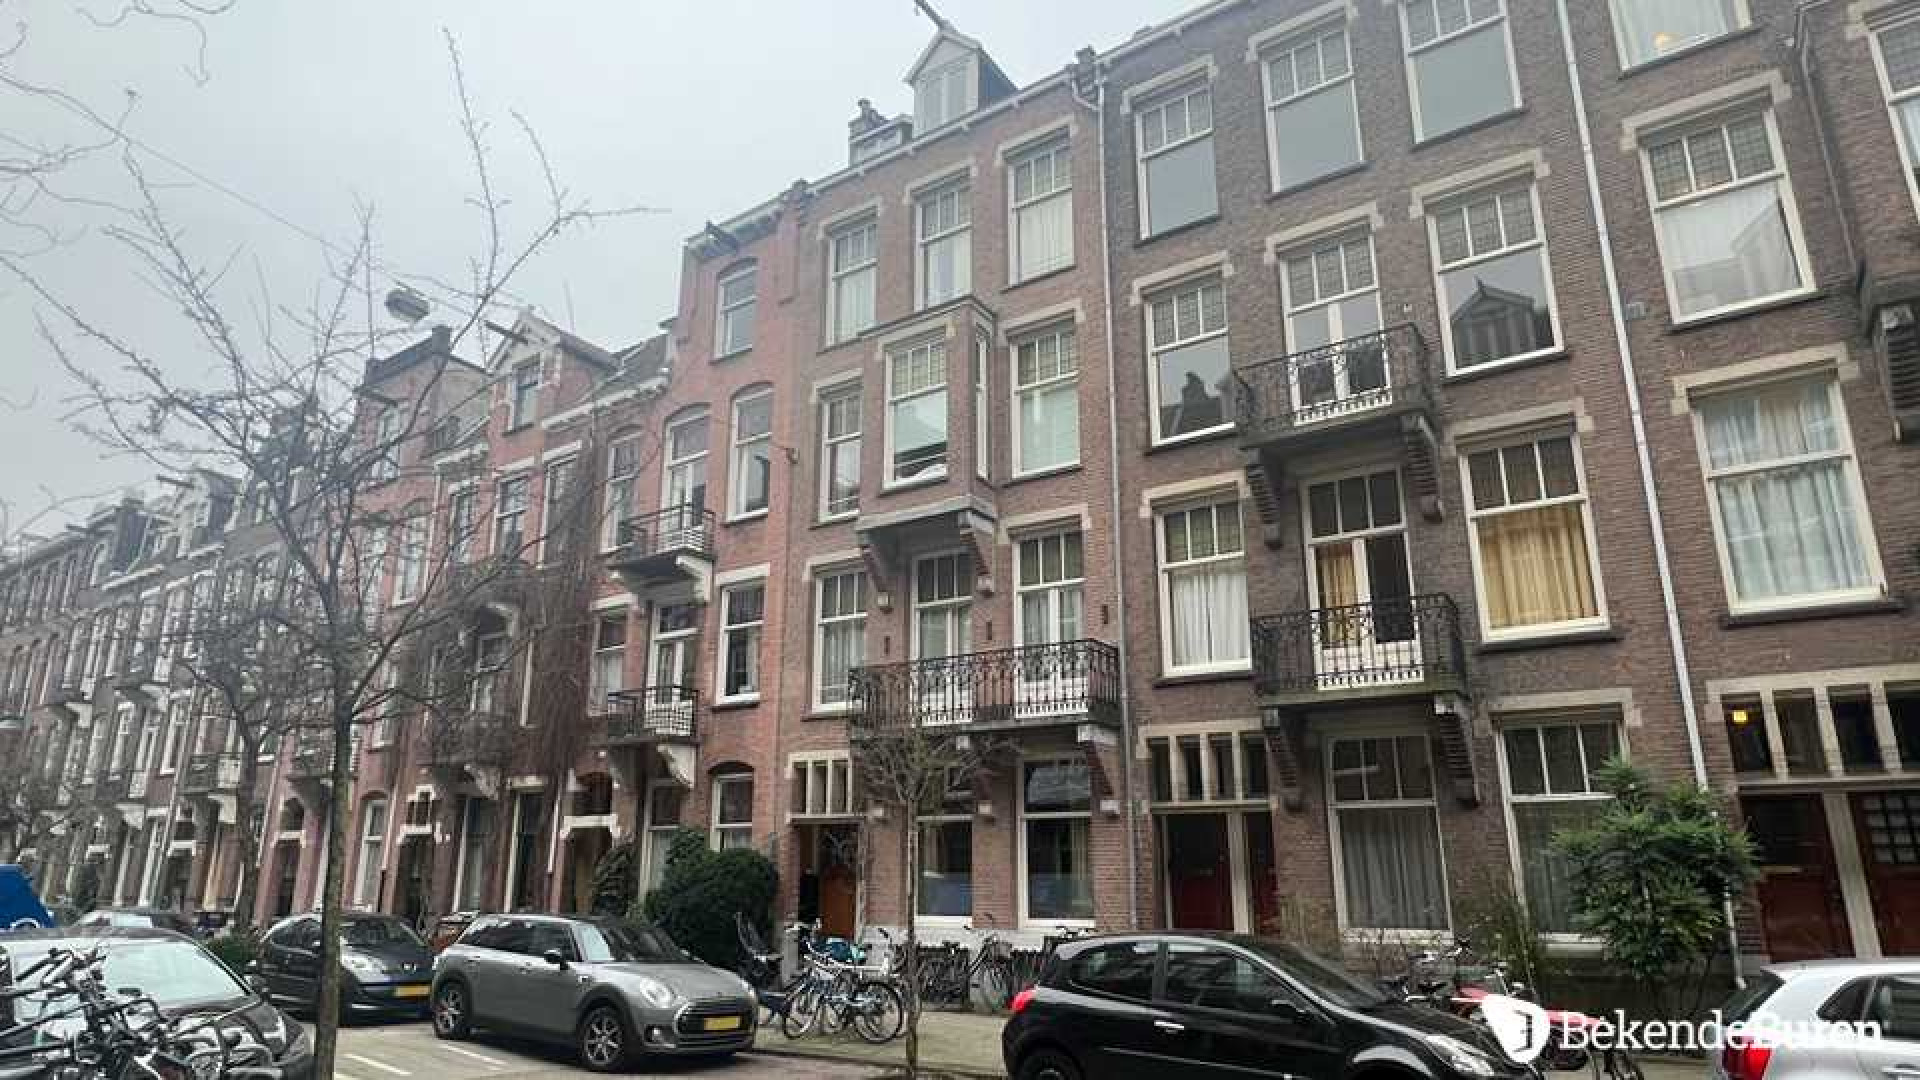 Badr Hari woont in dit bijzondere Amsterdamse huis. Zie foto's 2